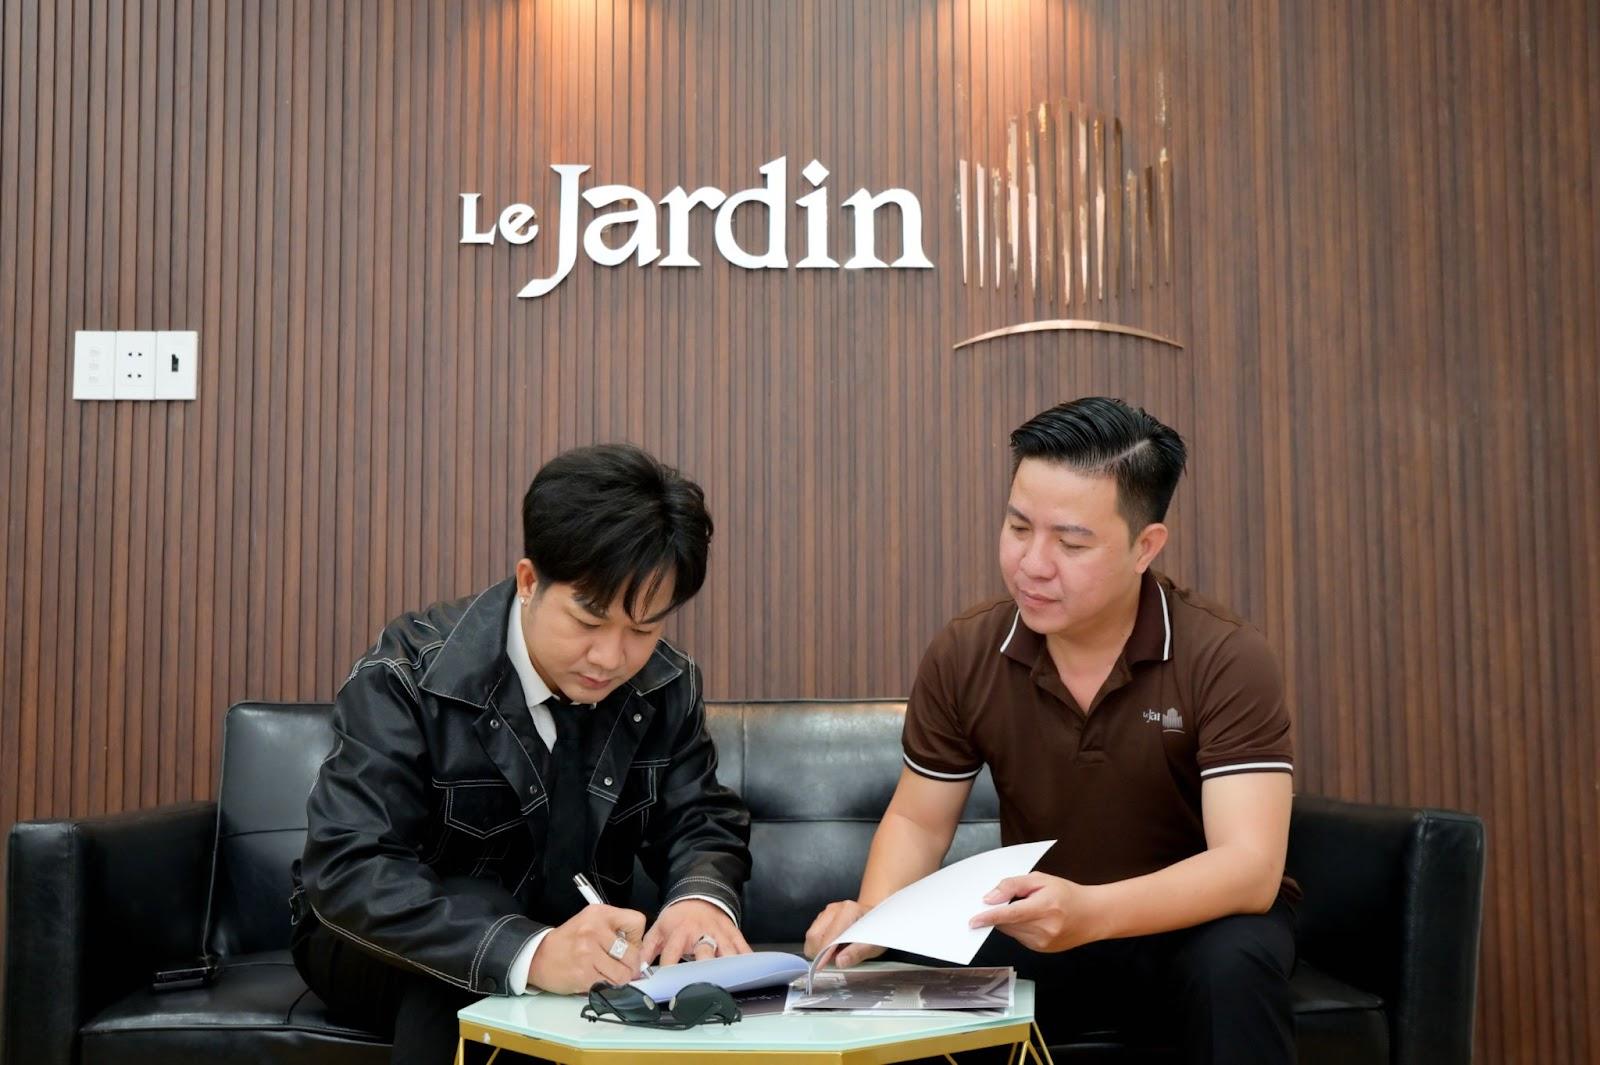 Ca sĩ Quách Tuấn Du ký hợp đồng “chốt deal” với đại diện Le Jardin House.